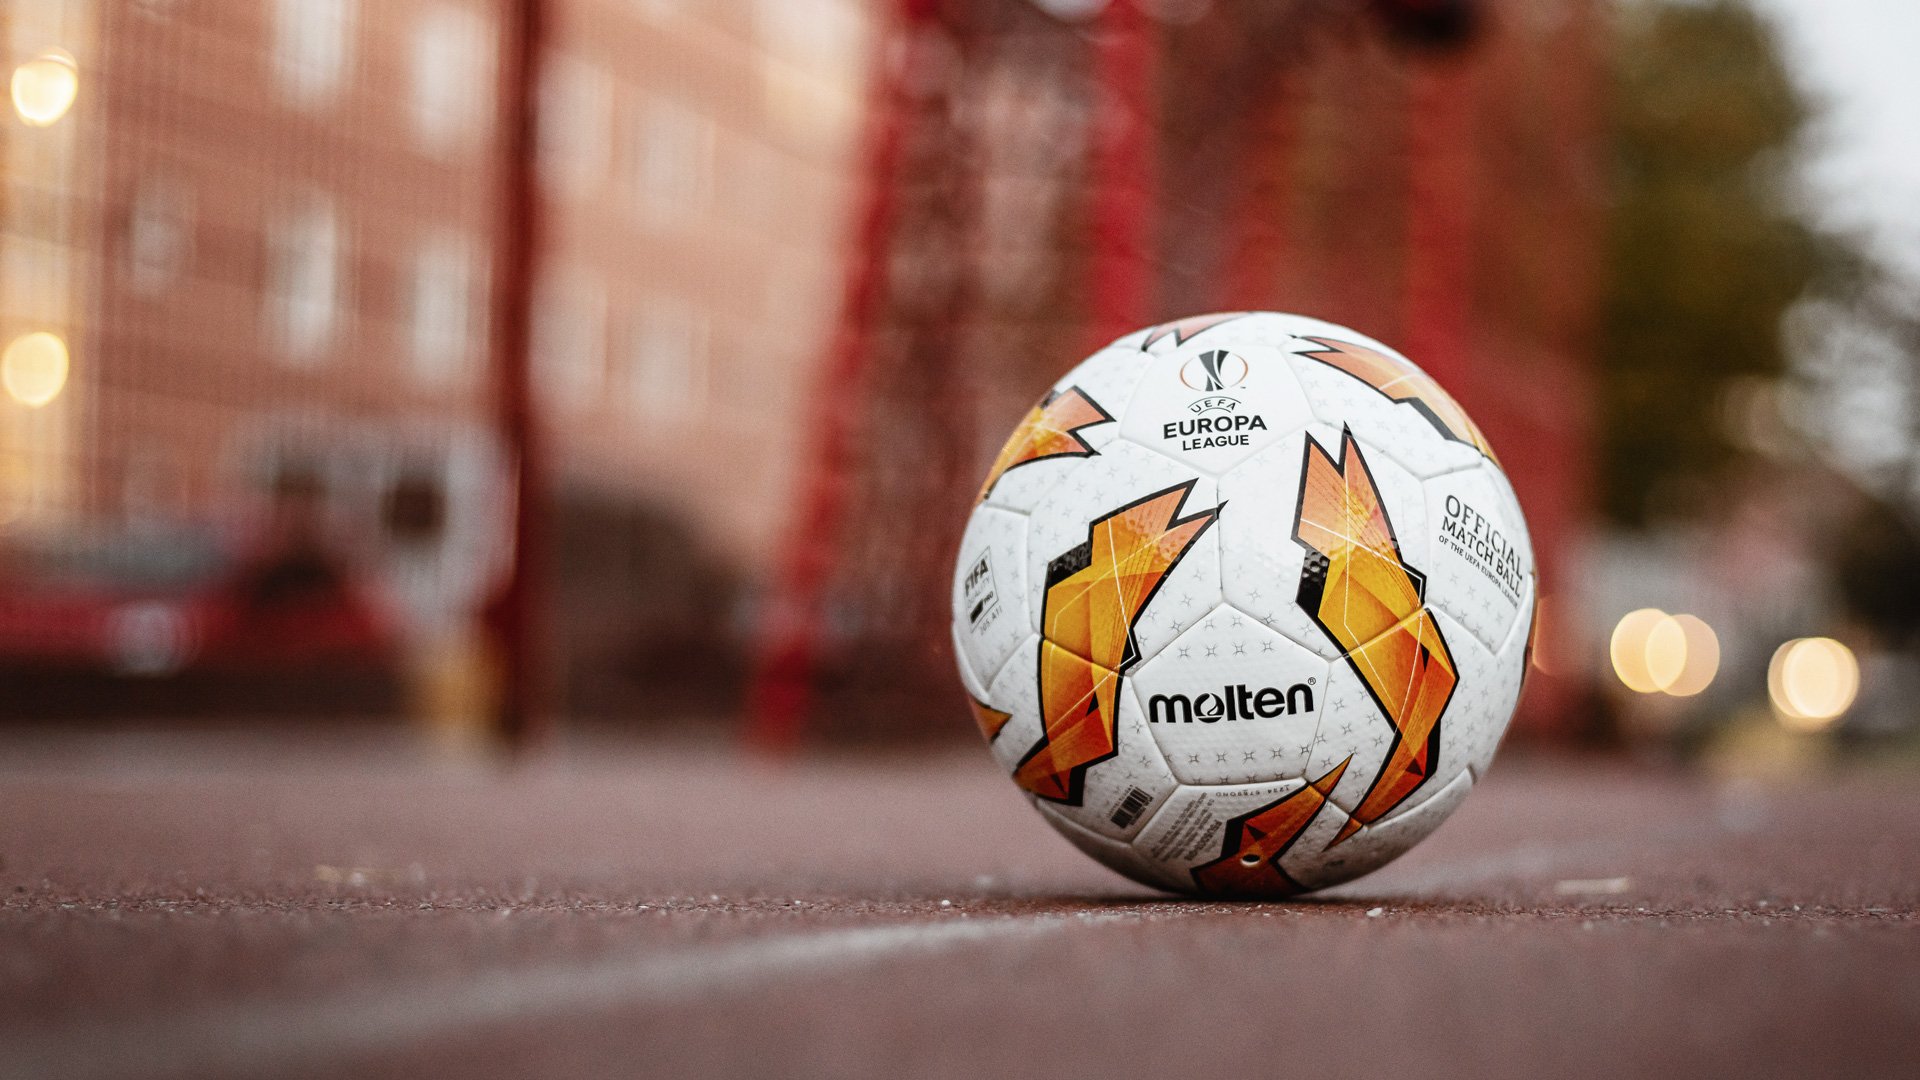 Molten UEFA Europa League Soccer Ball Official Series 1500 Size 5 Grey 